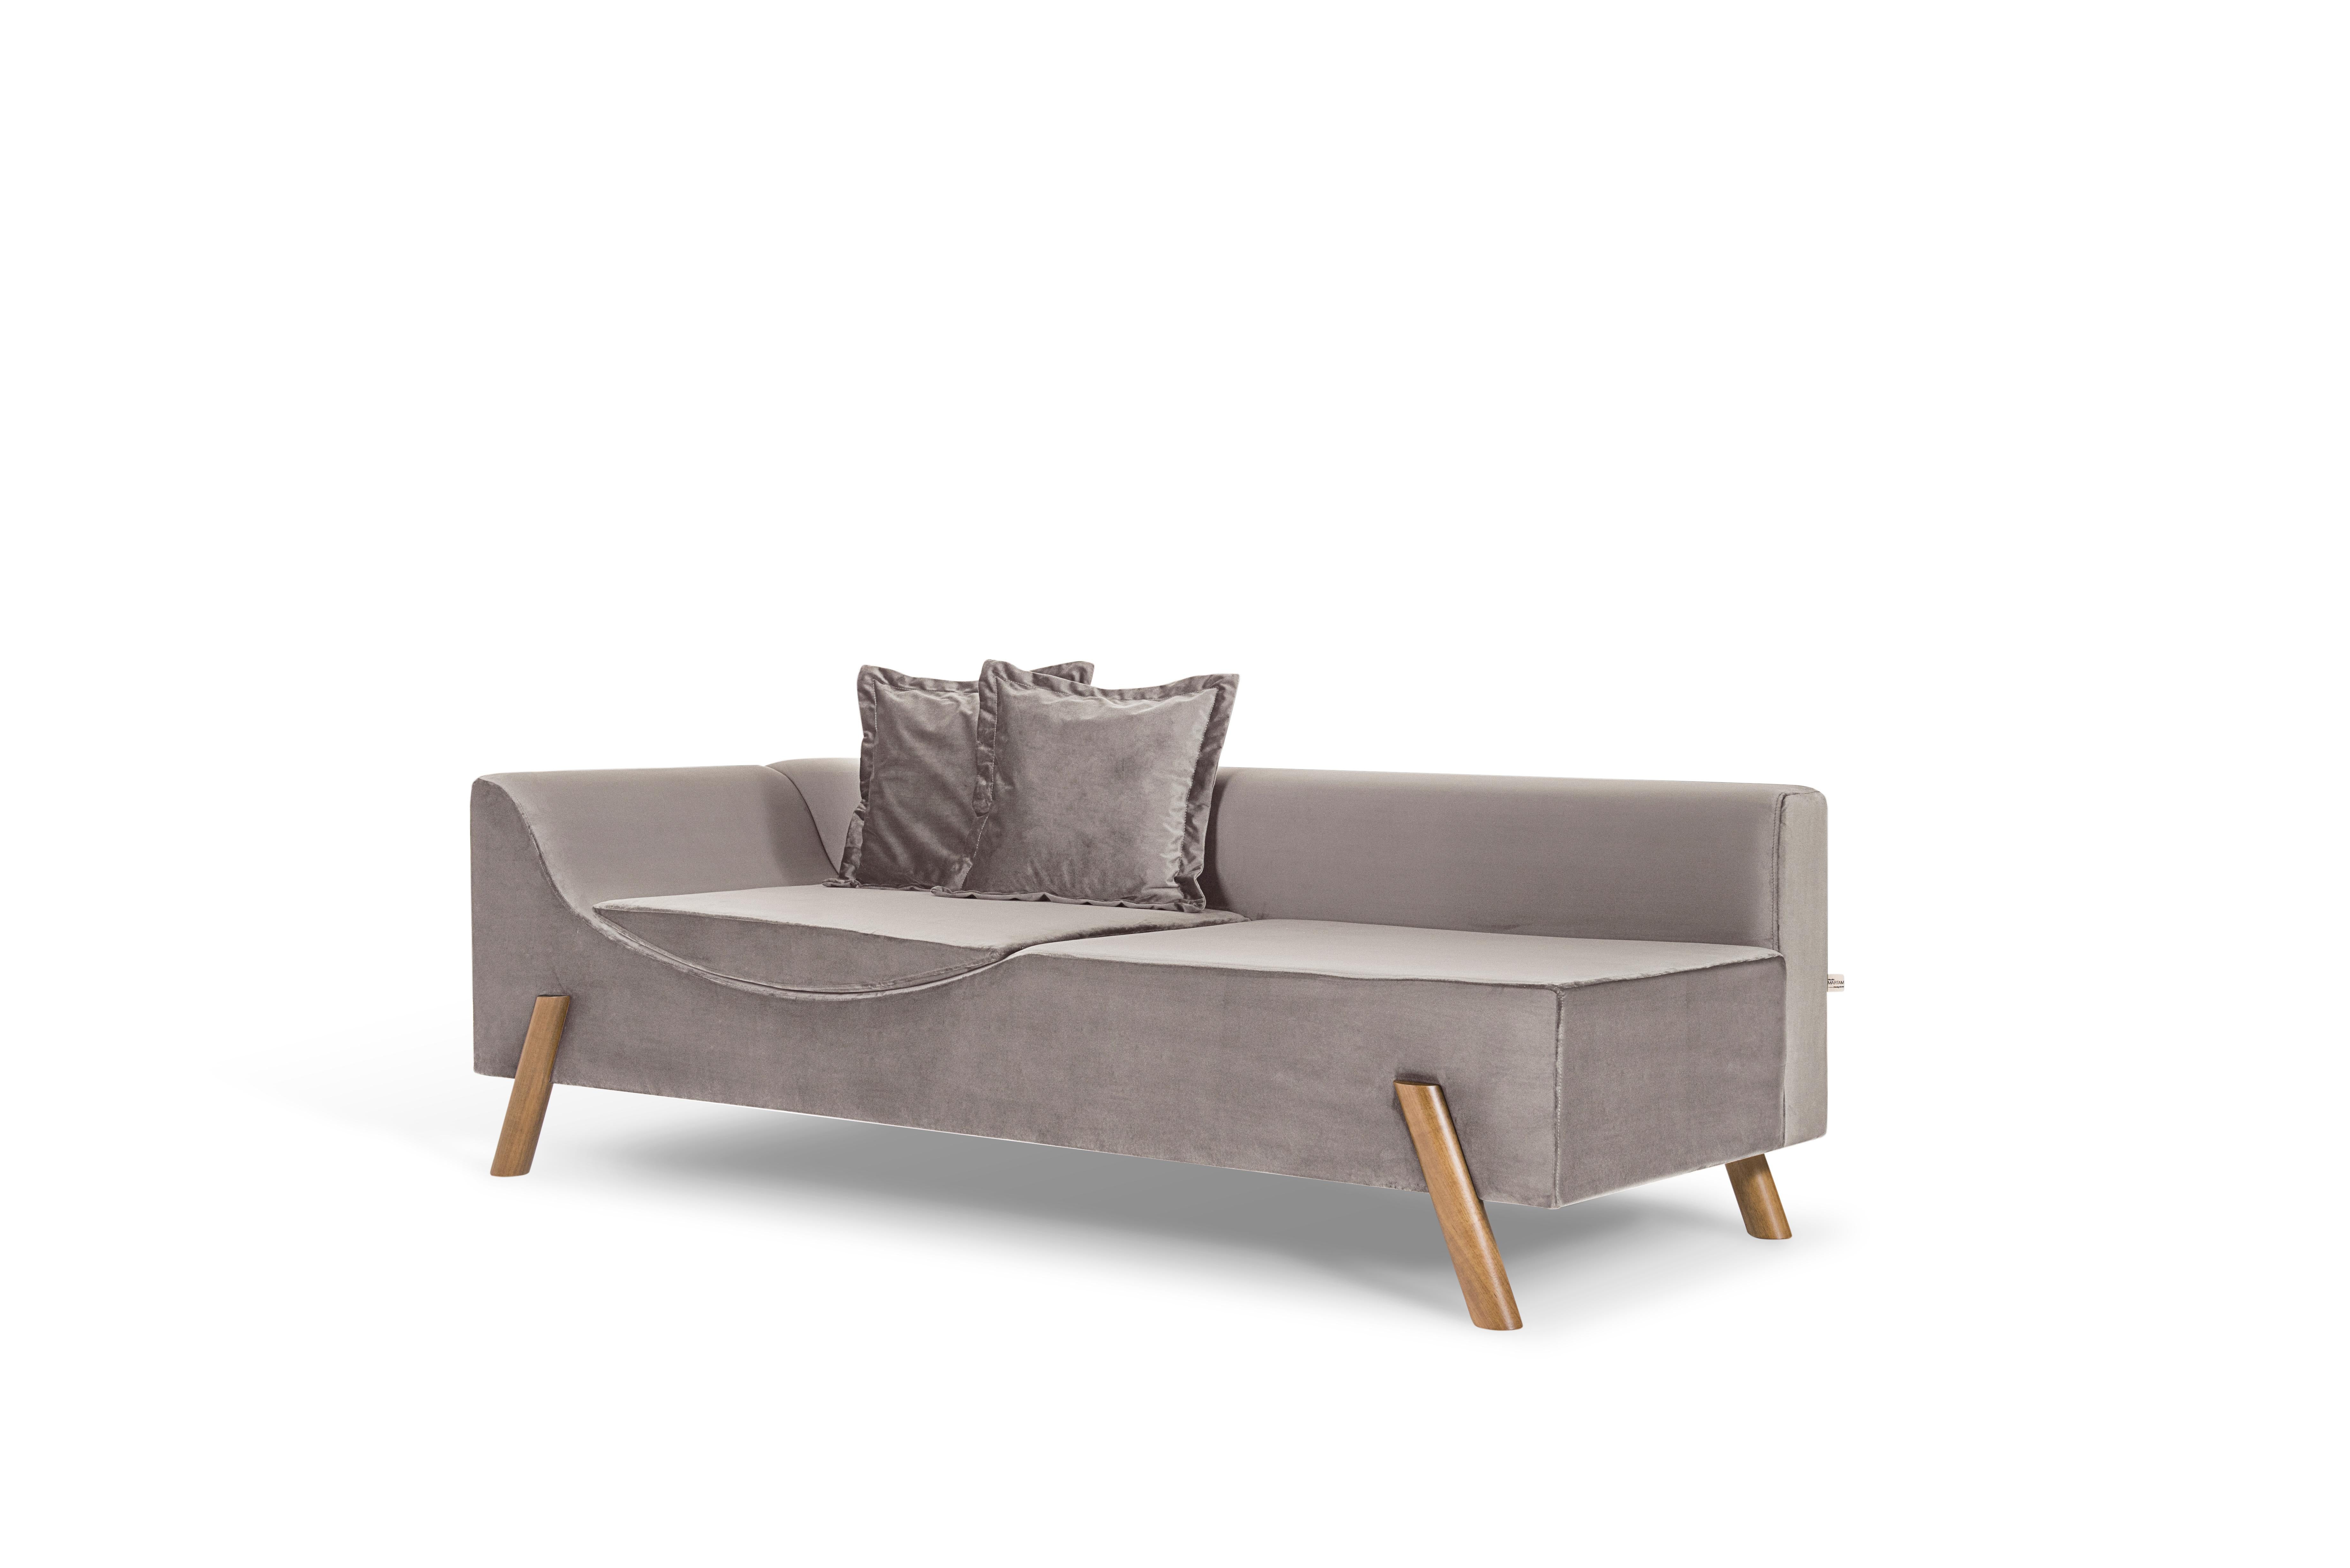 Die Flag Couch ist ein intelligentes und multifunktionales Möbelstück.
Die Couch hat ein in die Sitzfläche integriertes Kissen, das ihr eine Doppelfunktion verleiht: Im geschlossenen Zustand dient sie als bequemes Wohnsofa, im geöffneten Zustand